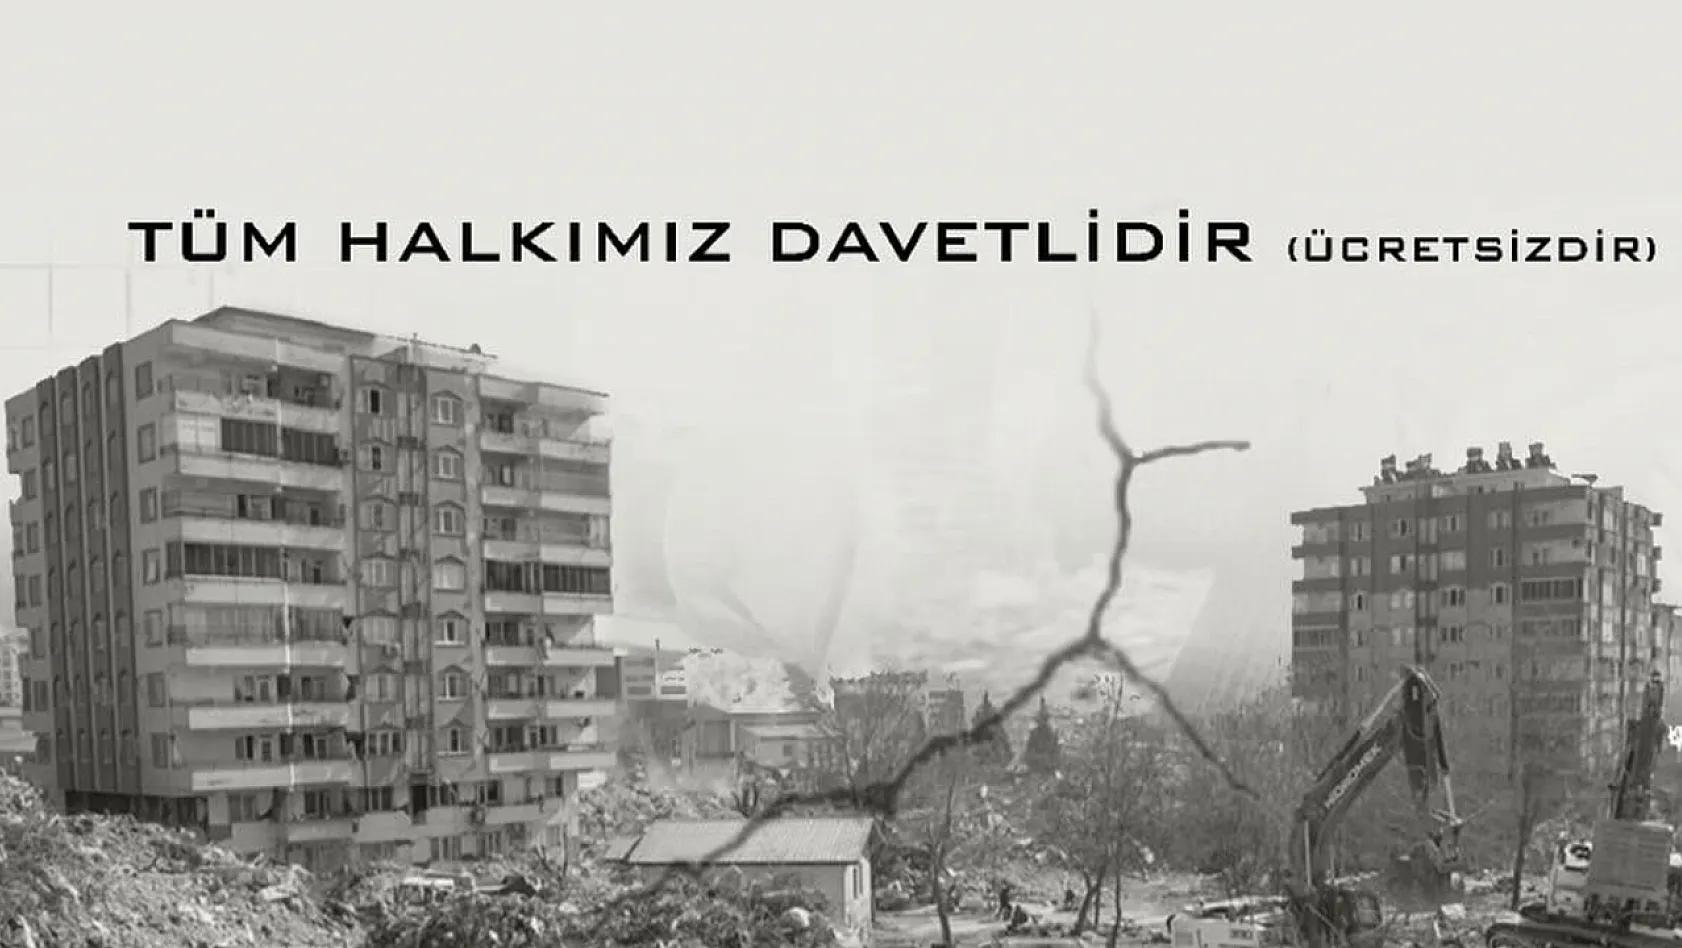 Dikkat! Kayseri'de Deprem Farkındalık Paneli yapılacak - Japon Deprem Uzmanı da katılacak